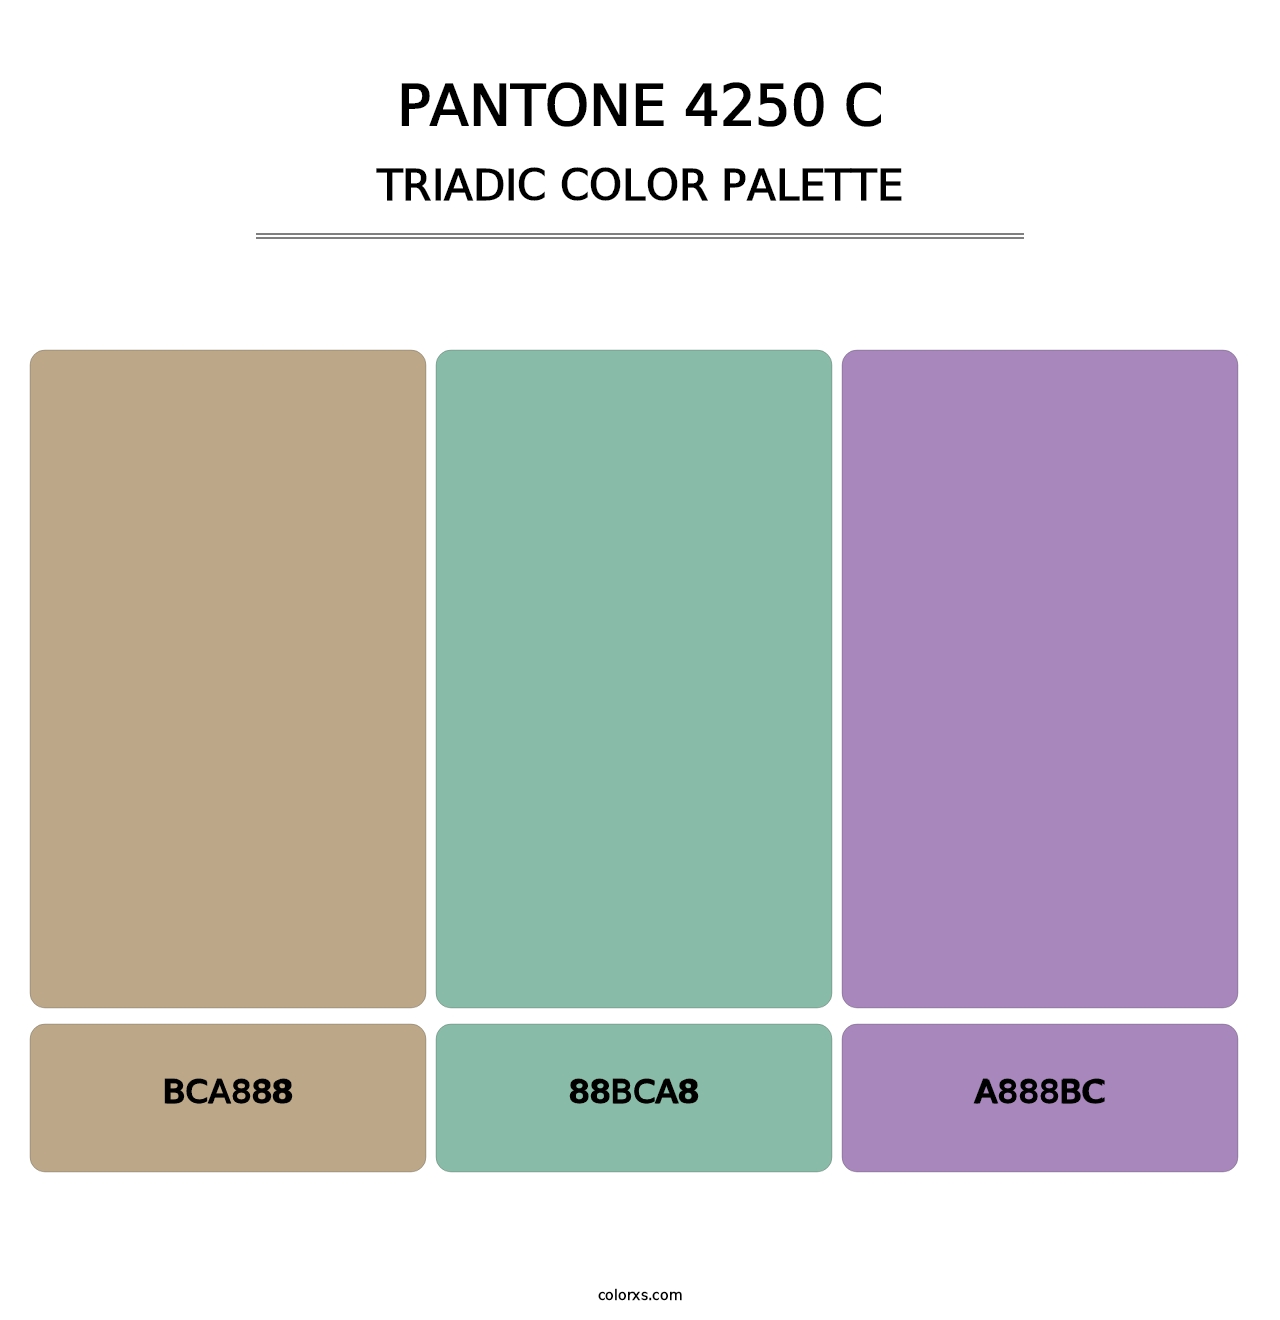 PANTONE 4250 C - Triadic Color Palette